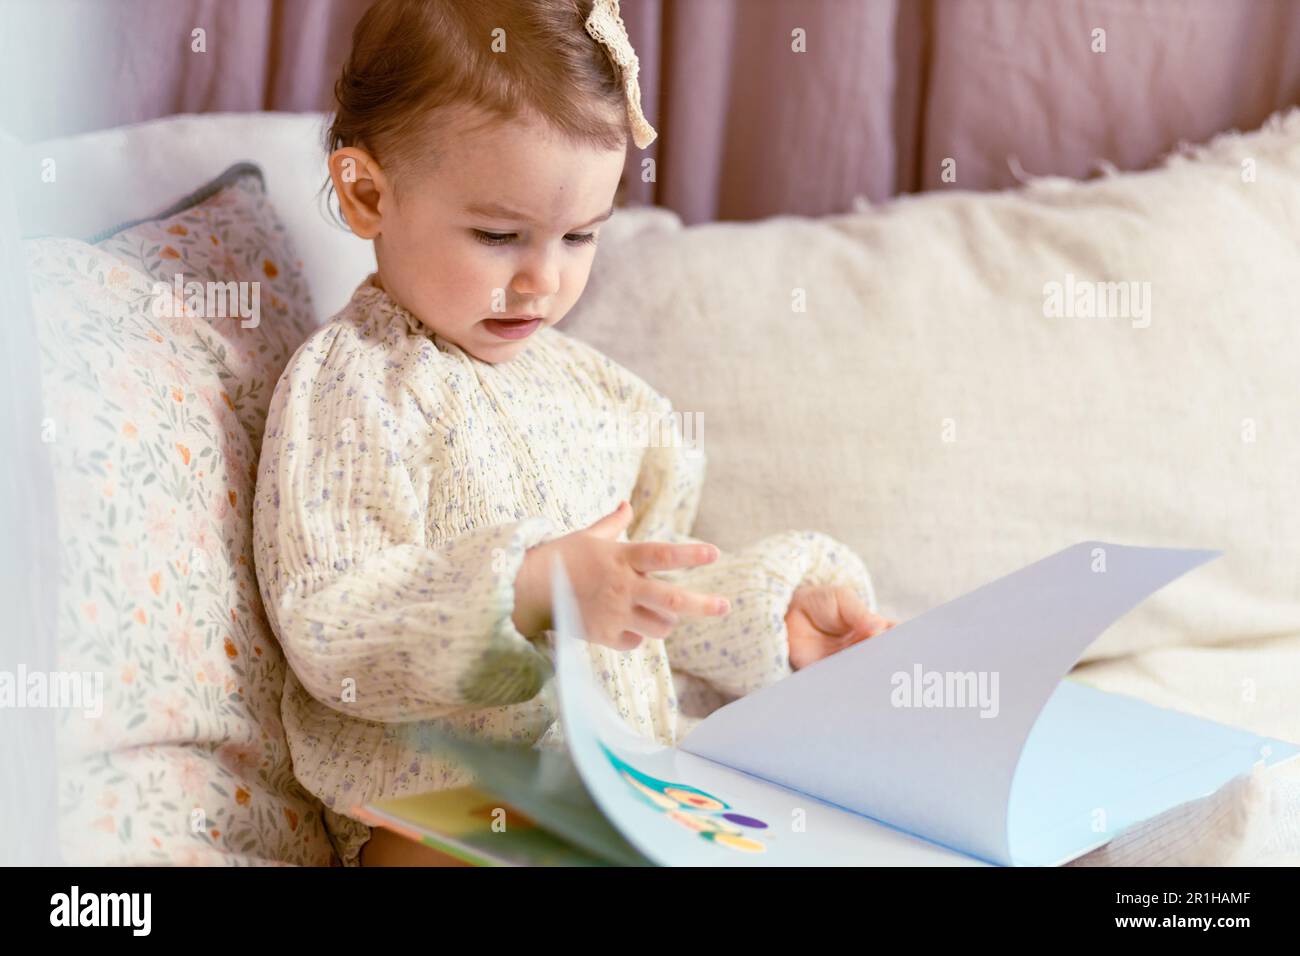 Mignon, petite fille de bébé assis sur les oreillers lisant un livre, tournant des pages Banque D'Images